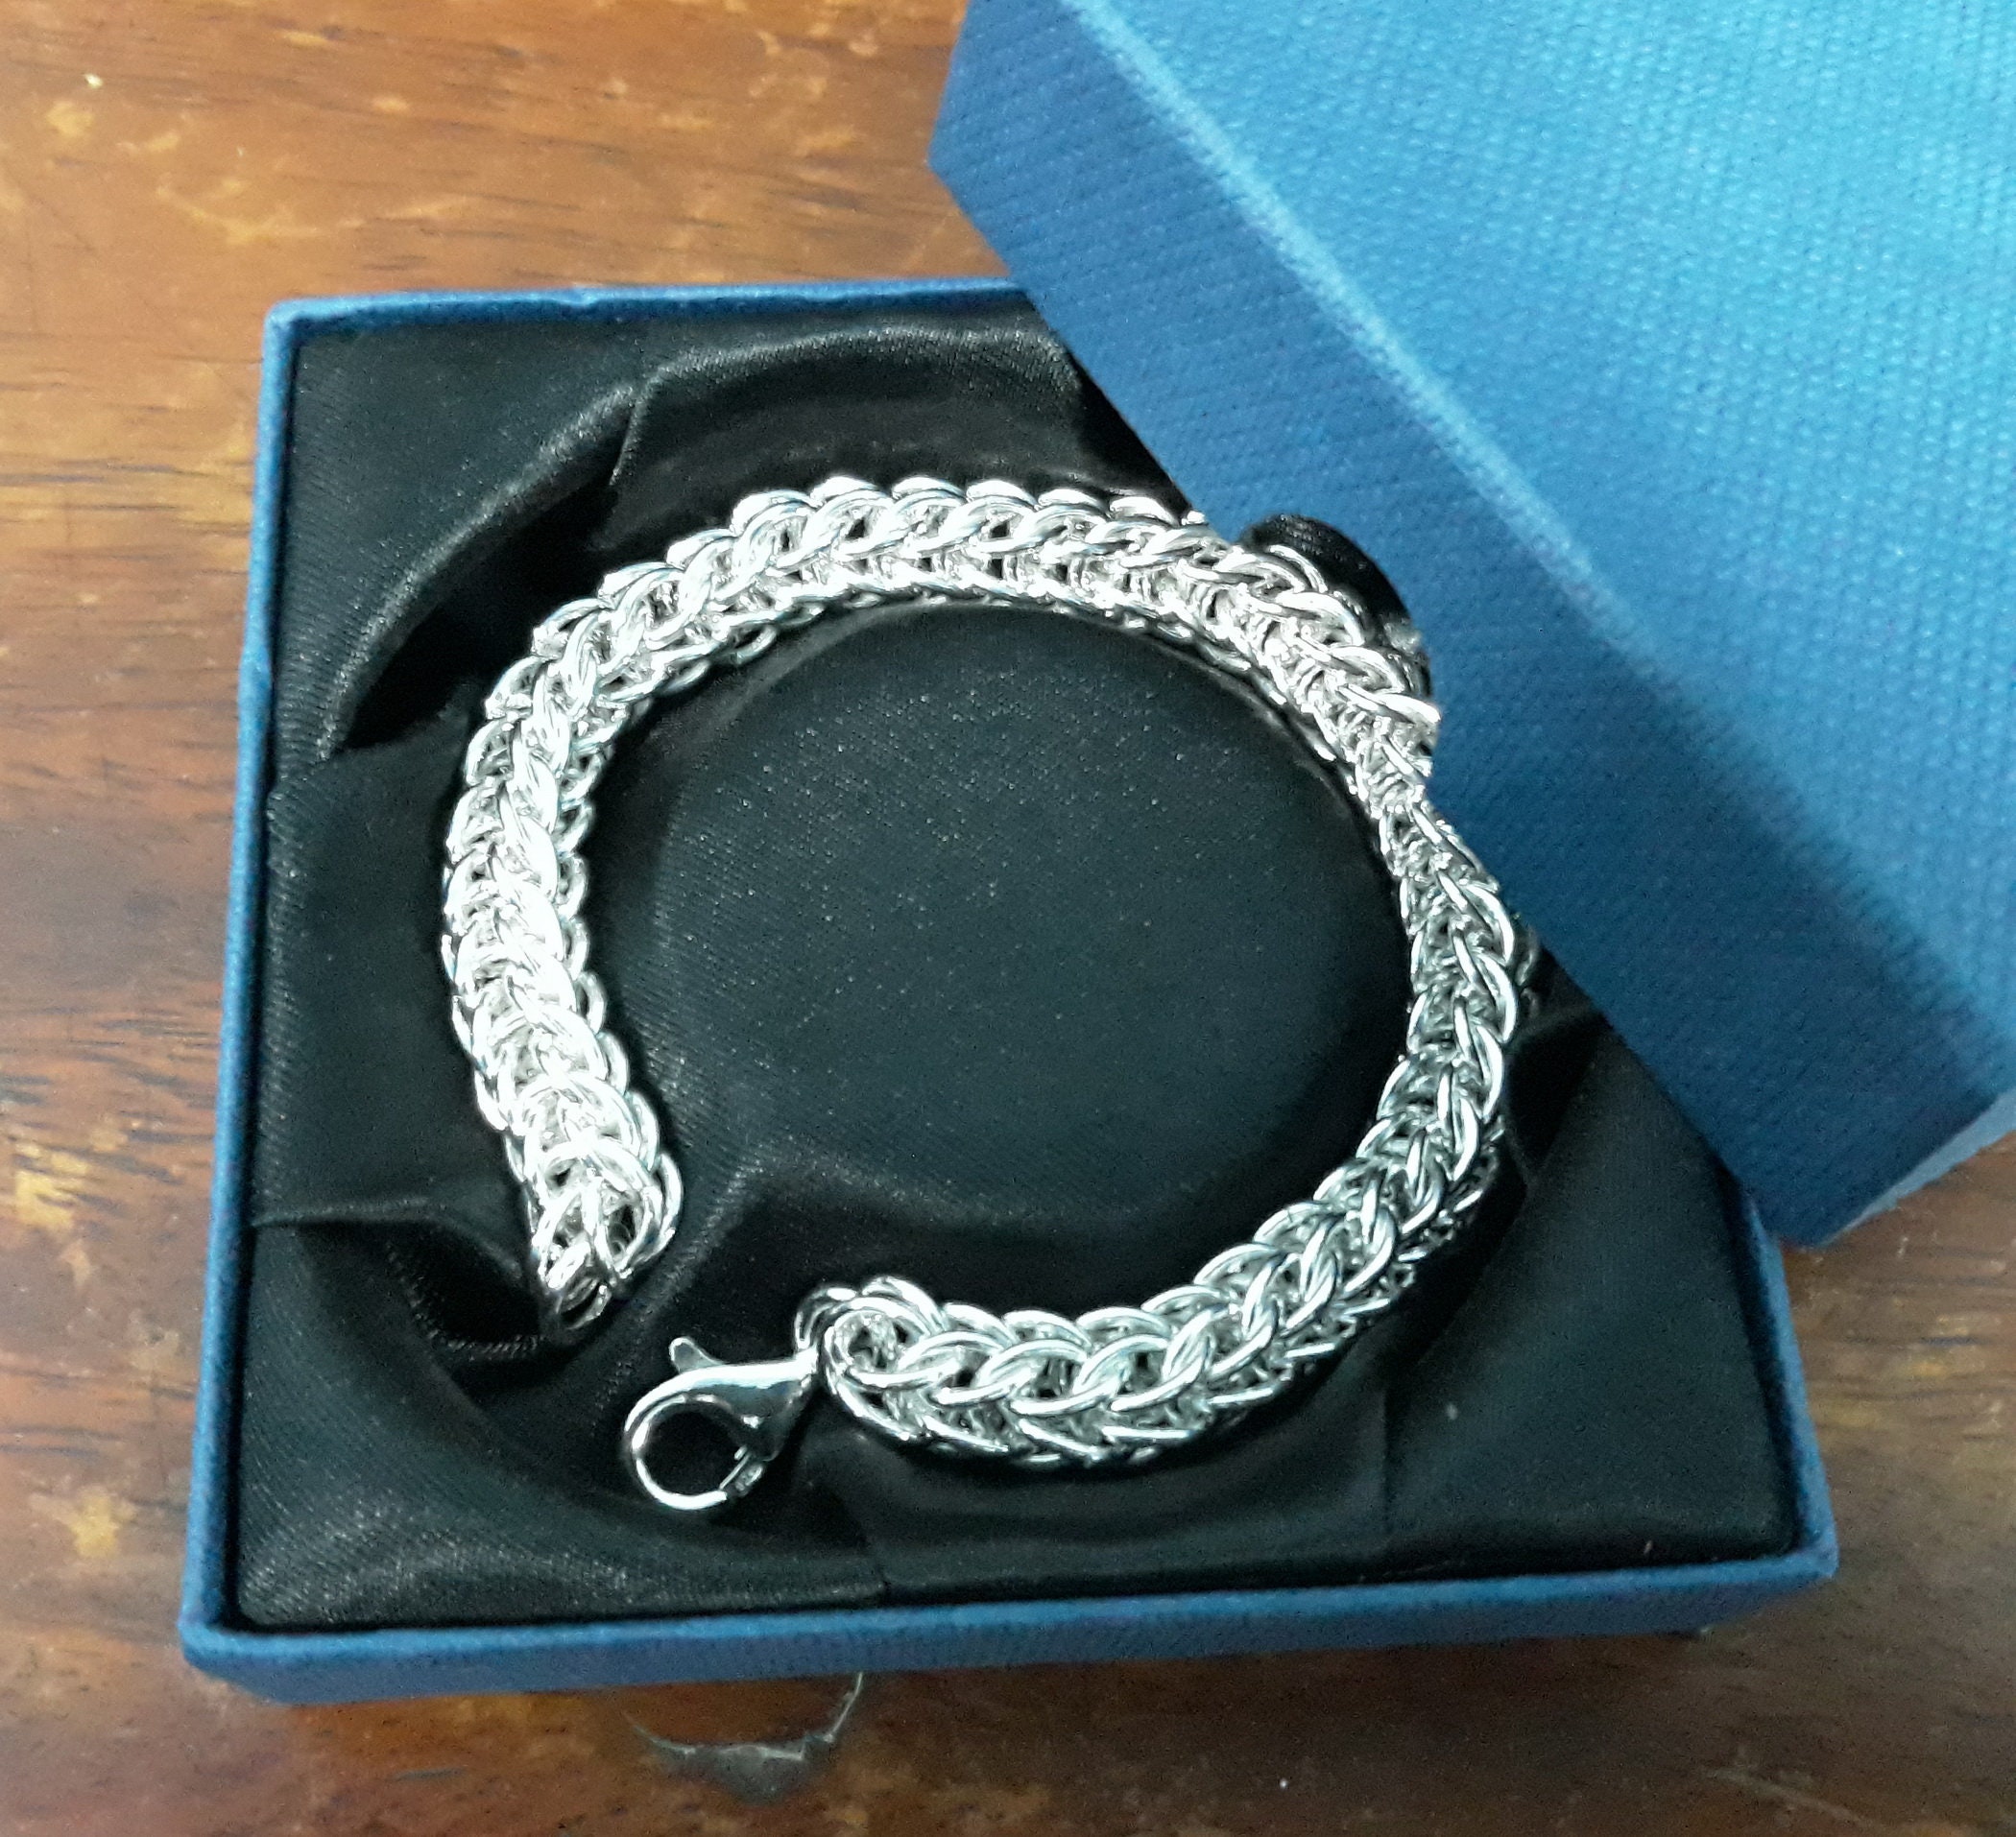 Byzantine Sterling Silver Bracelet